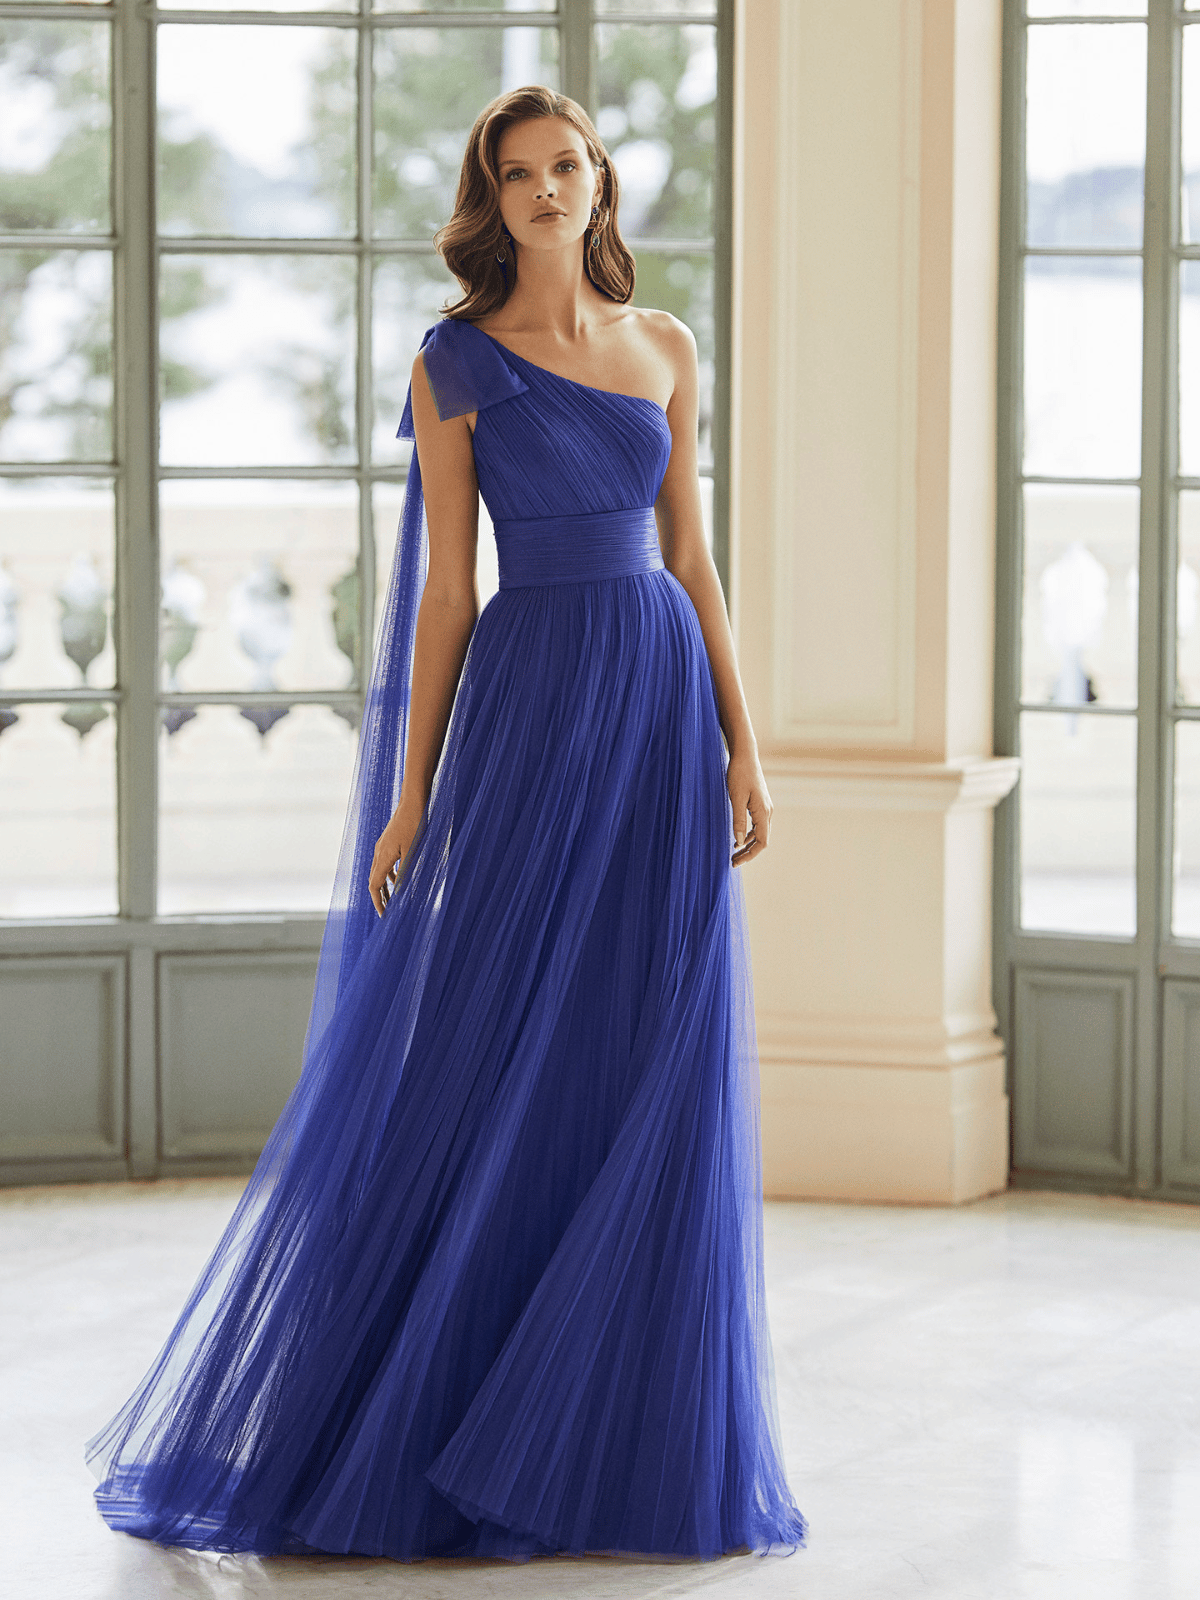 Modella con vestito elegante blu